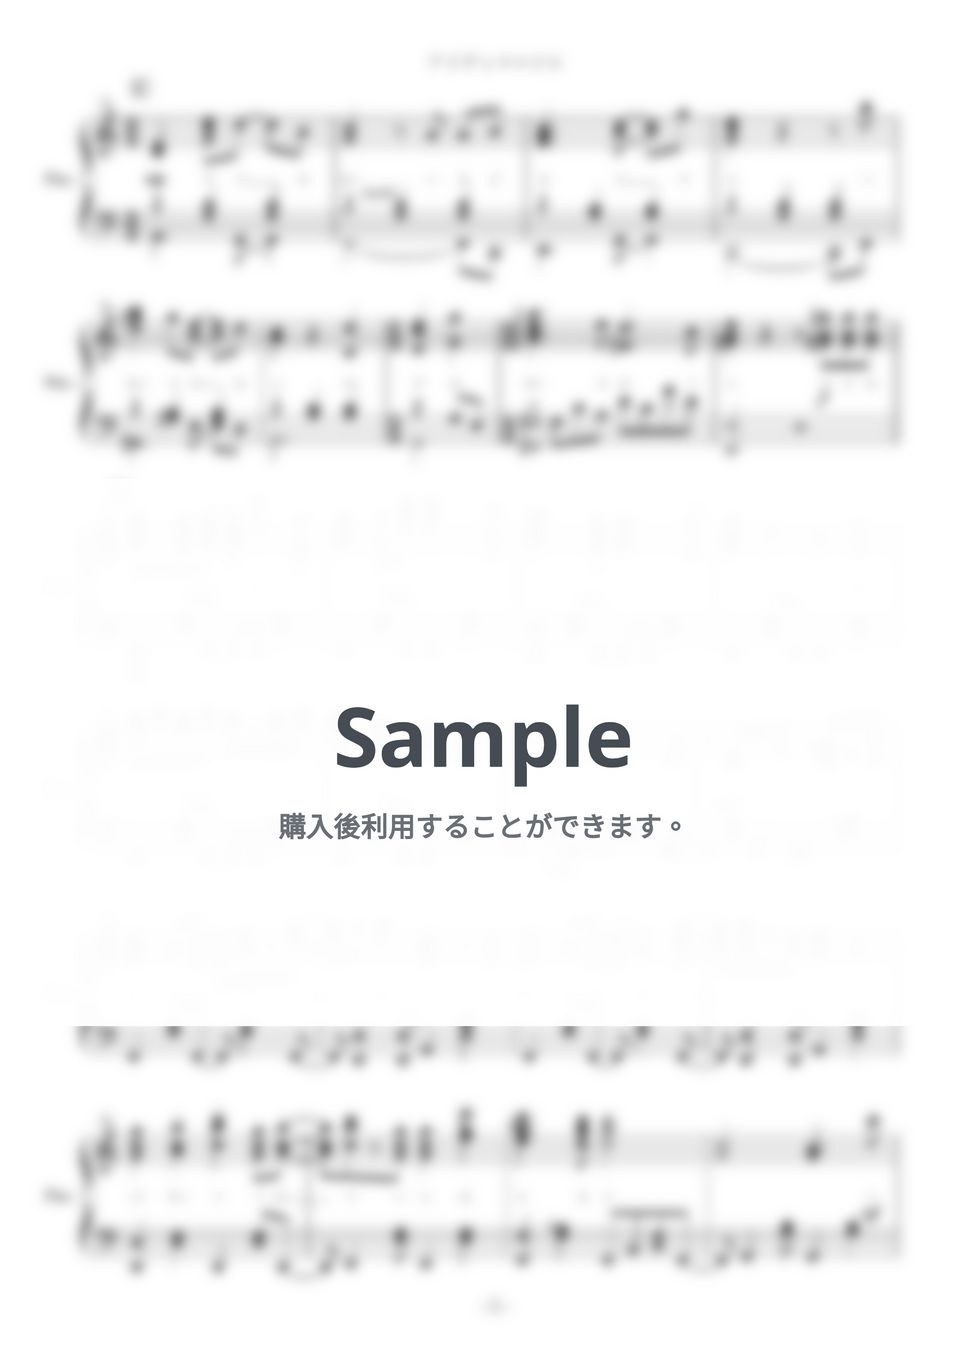 25時、ナイトコードで。 - アイディスマイル (ピアノ楽譜 / プロジェクトセカイ カラフルステージ! / 全９ページ / とあ) by yoshi